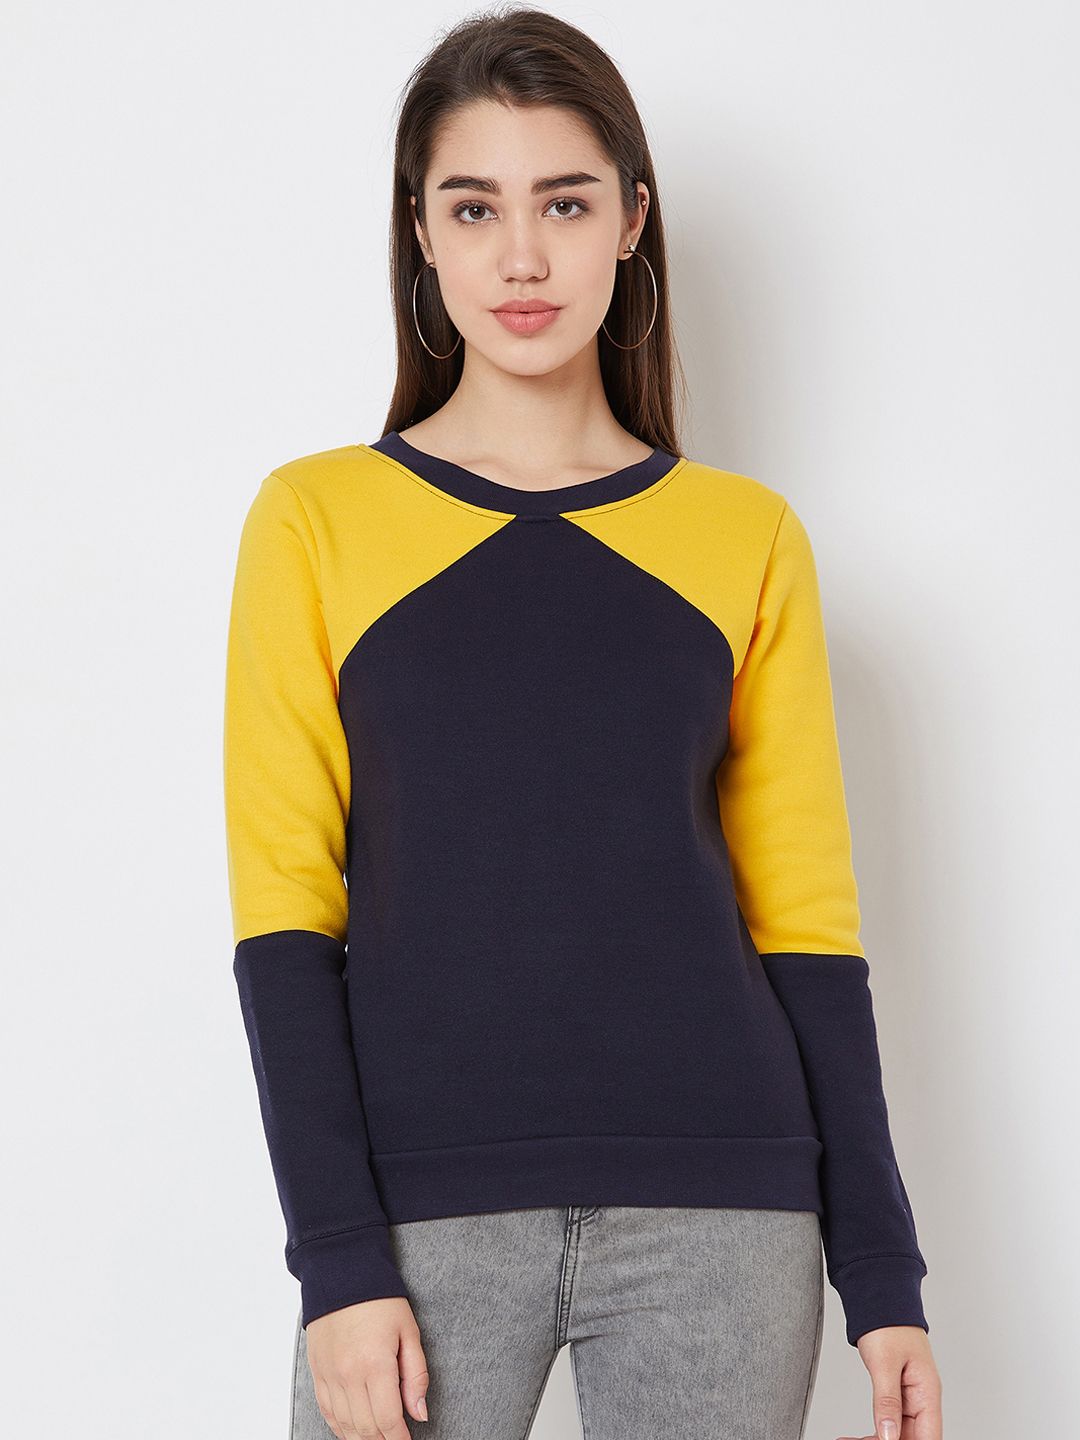 Nun Women Navy Blue & Yellow Colourblocked Sweatshirt Price in India